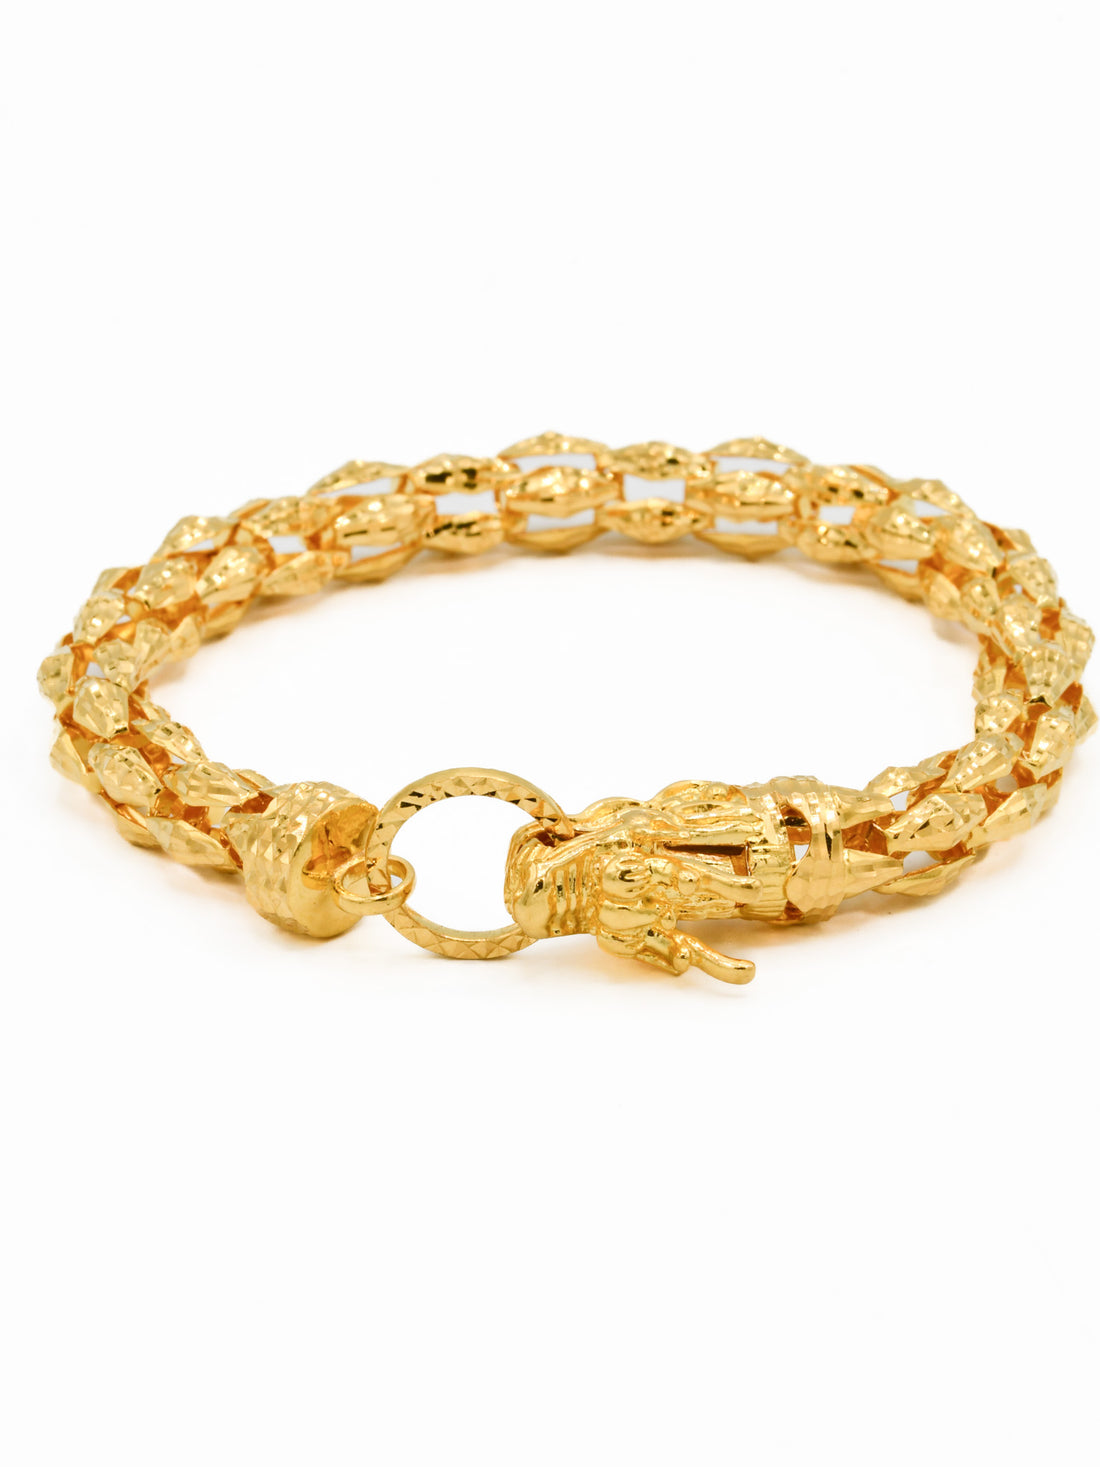 22ct Gold Mens Bracelet - Roop Darshan